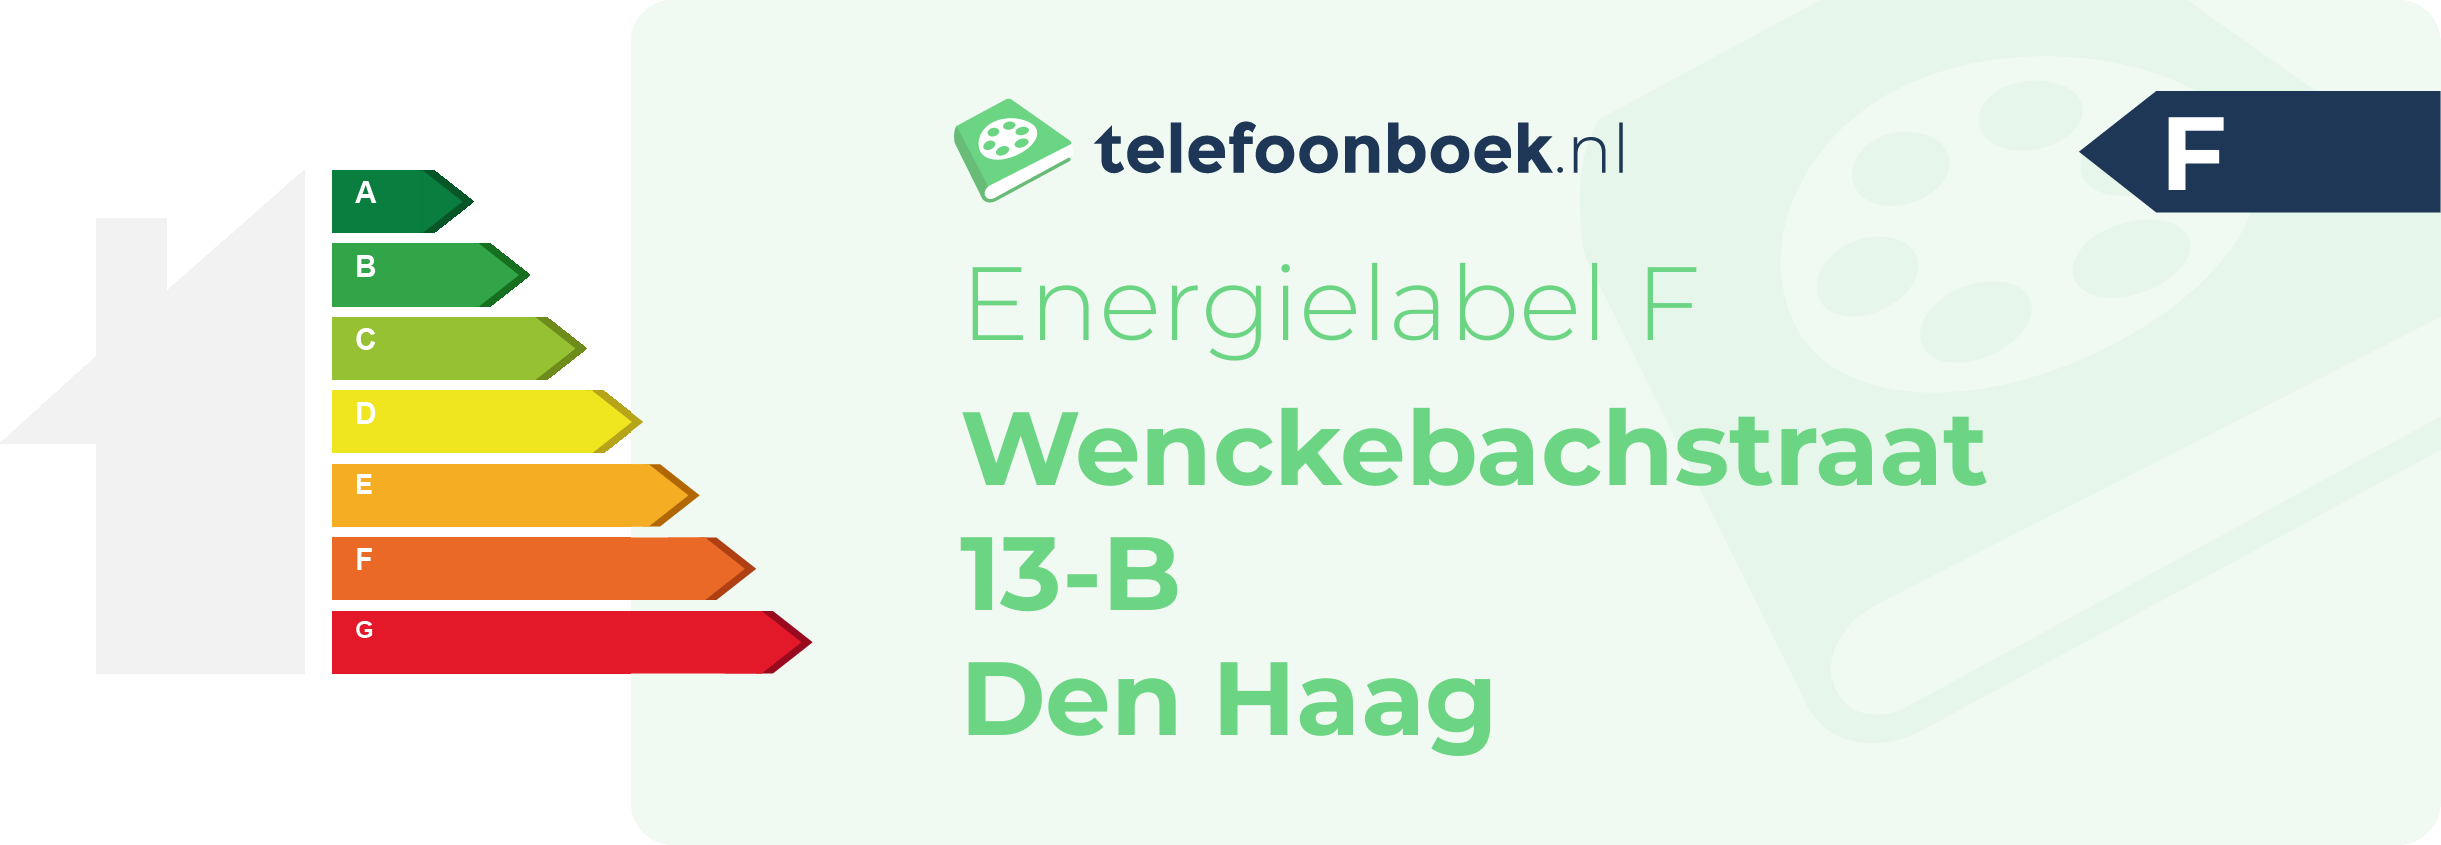 Energielabel Wenckebachstraat 13-B Den Haag